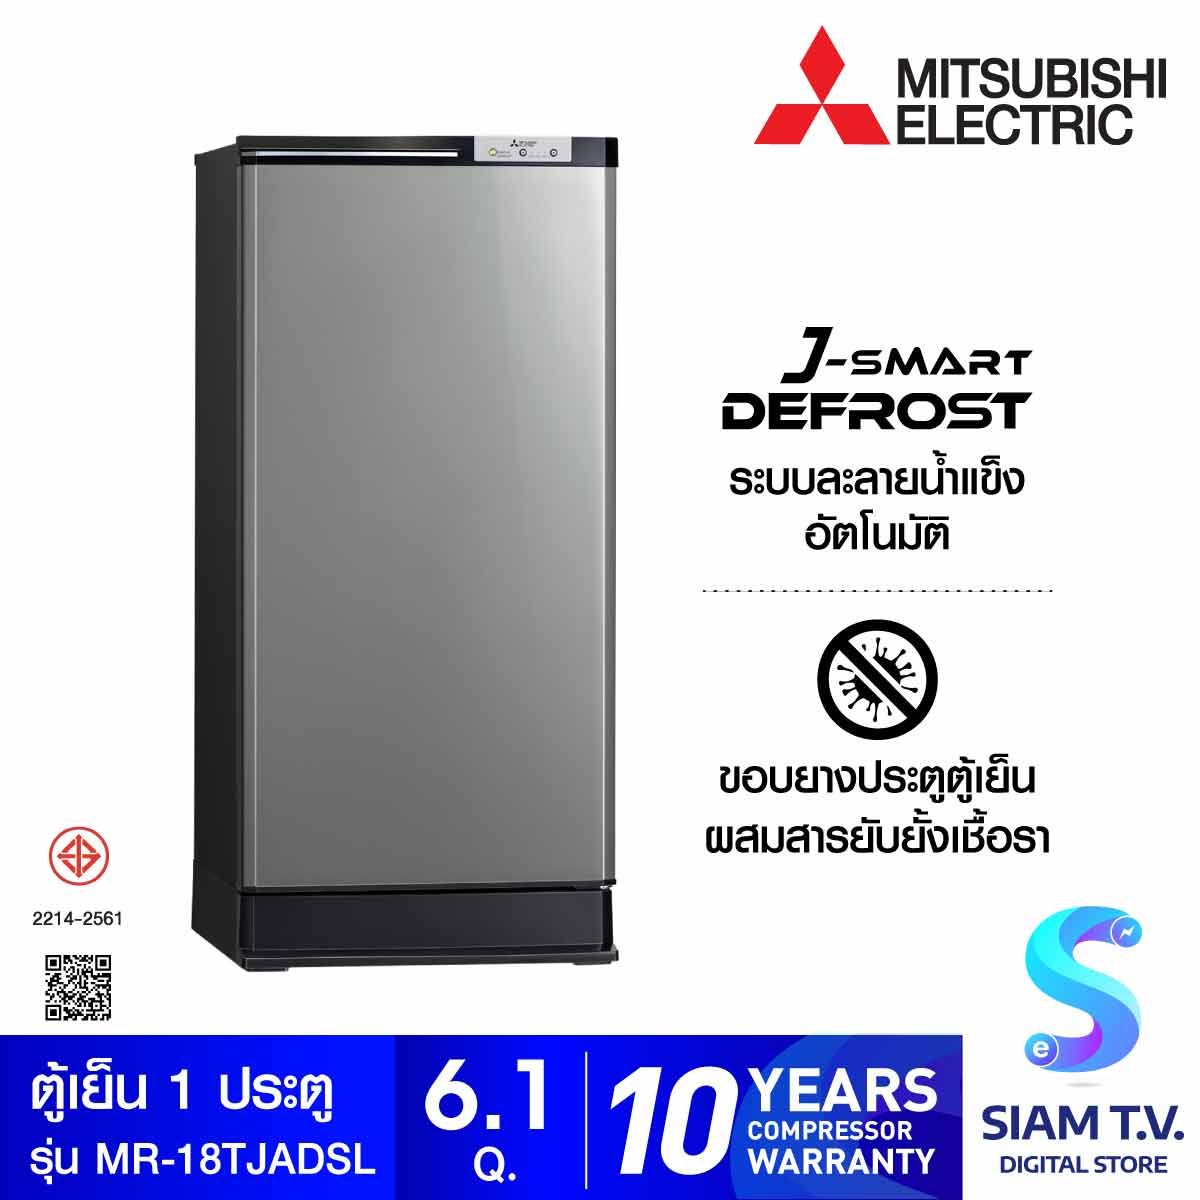 MITSUBISHI ELECTRIC ตู้เย็น1ประตูJ-SMART DEFROST 6.1Q สีดาร์กซิลเวอร์รุ่น รุ่น MR-18TJA